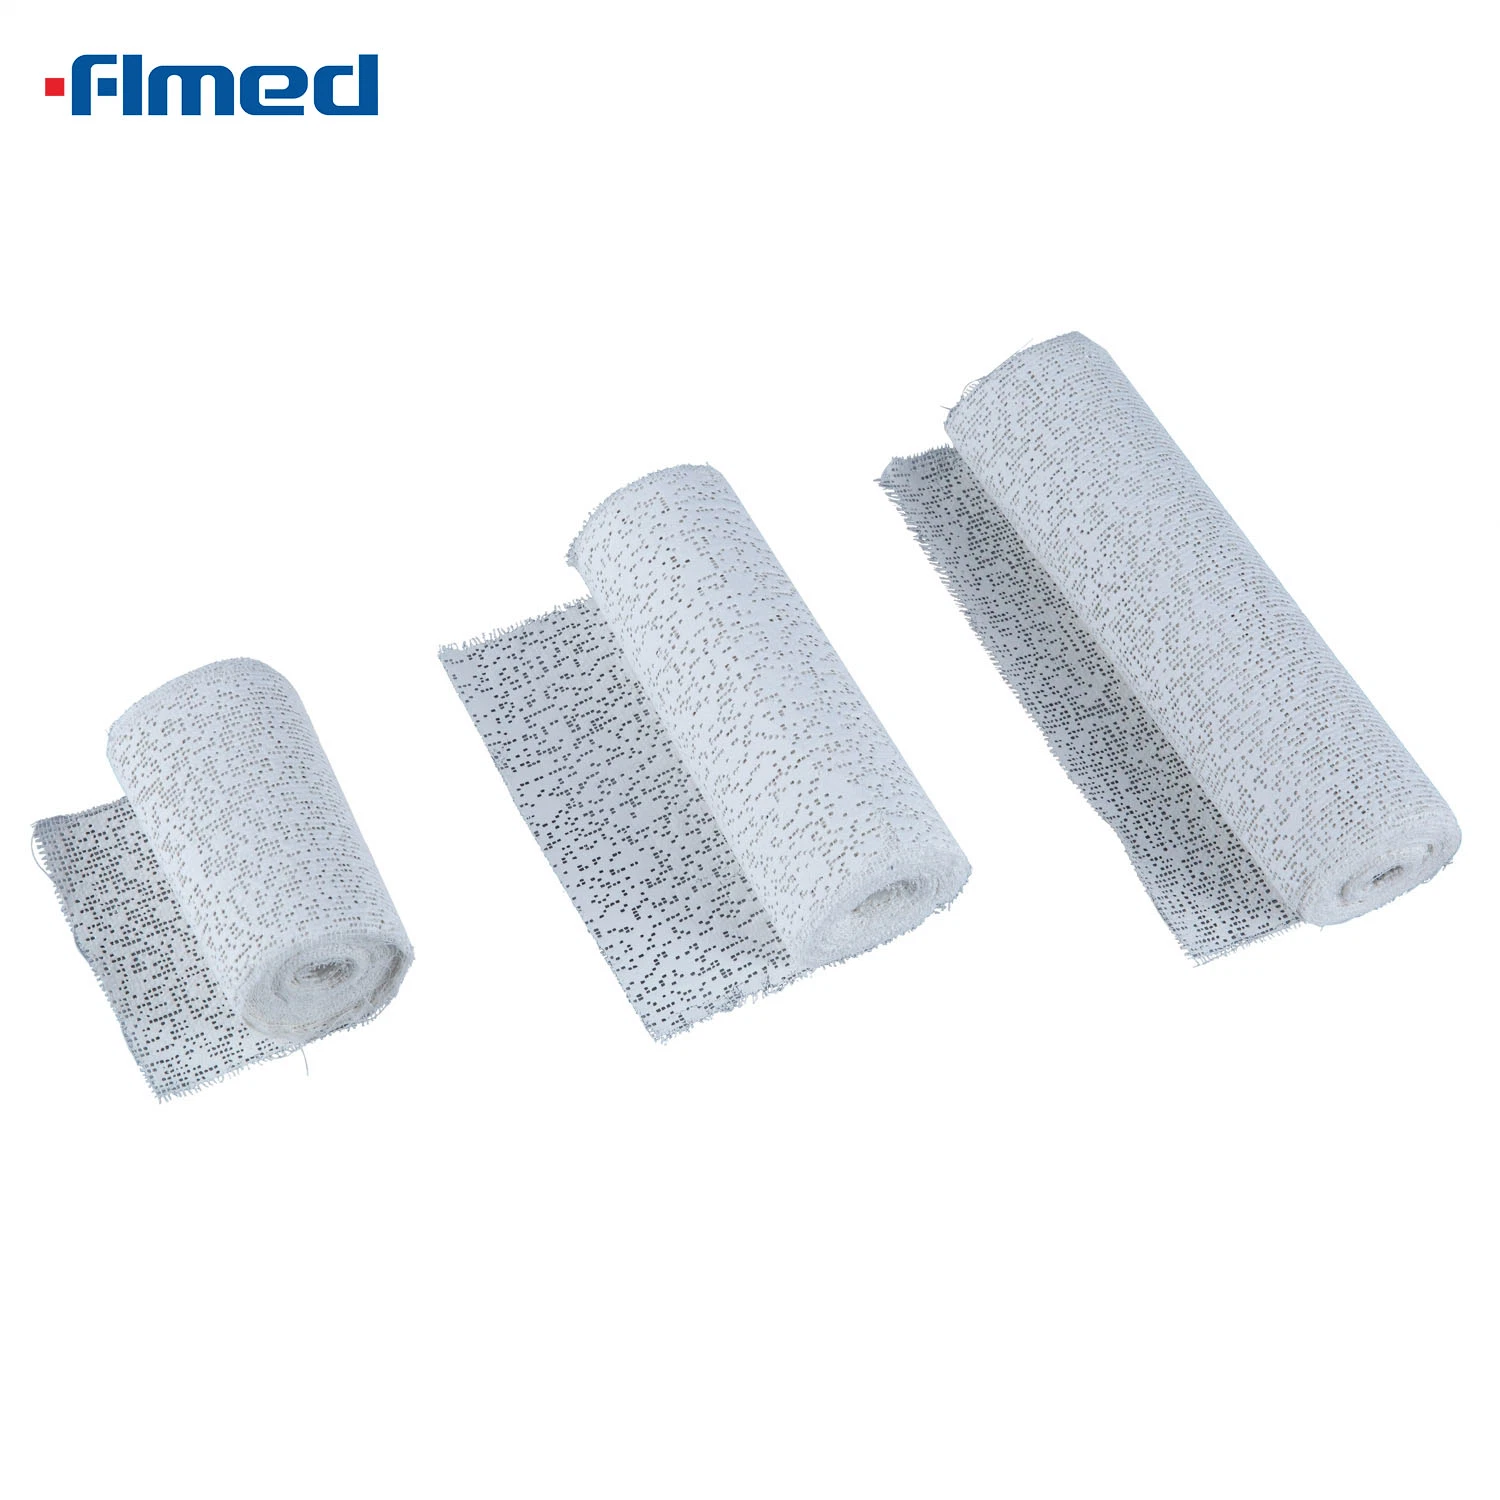 China Wholesale/Supplier Pop Bandage (Plaster of Paris Bandage) Soft Rolls Cotton Pop Undercast Padding Orthopedic Cast Bandage CE ISO Approved